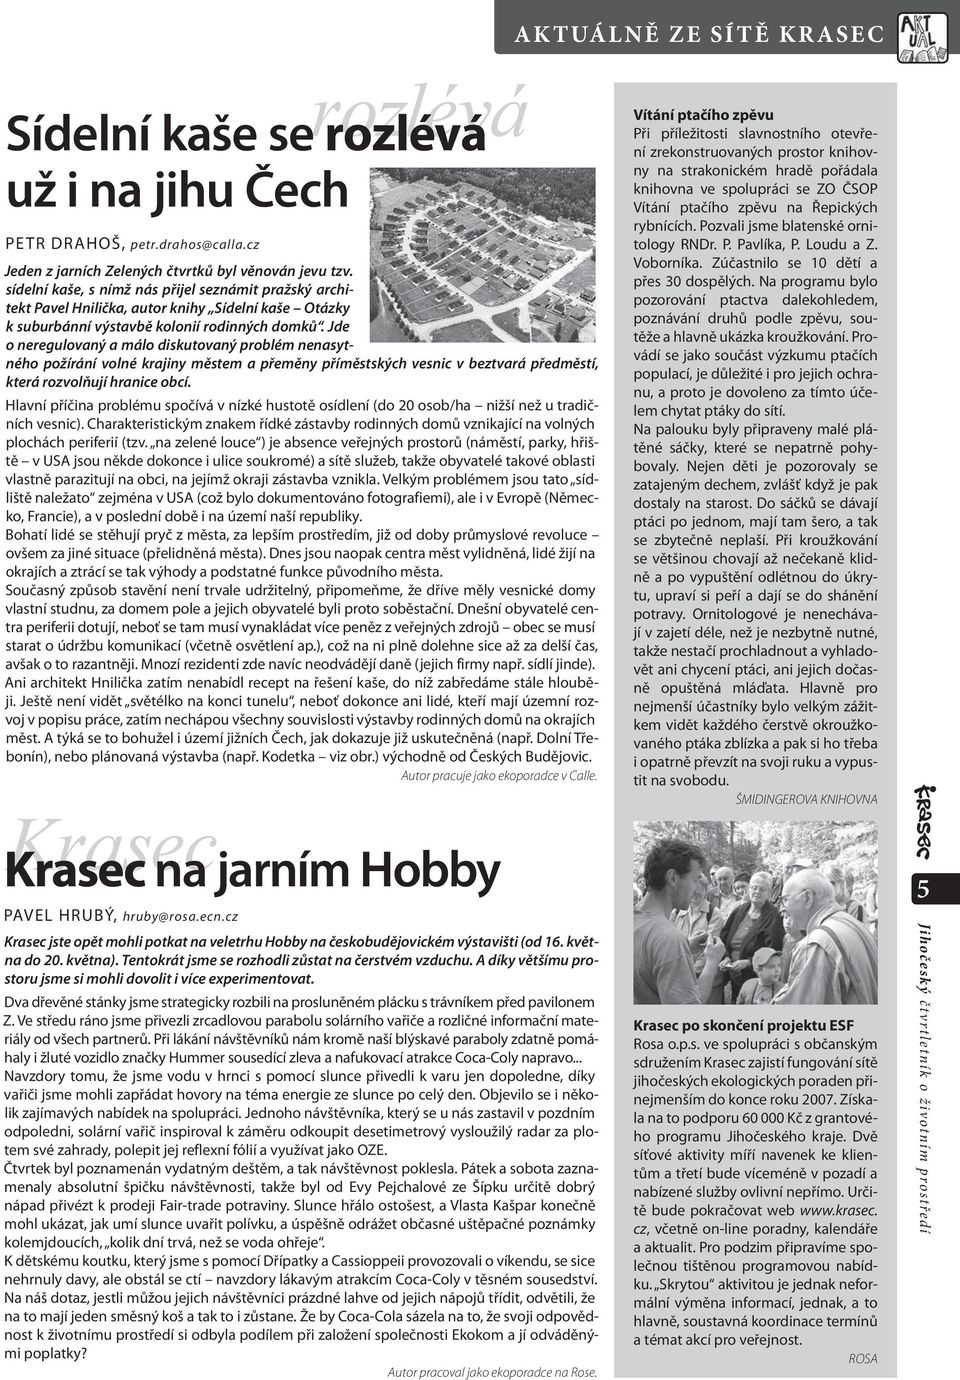 sídelní kaše, s nímž nás přijel seznámit pražský architekt Pavel Hnilička, autor knihy Sídelní kaše Otázky k suburbánní výstavbě kolonií rodinných domků.